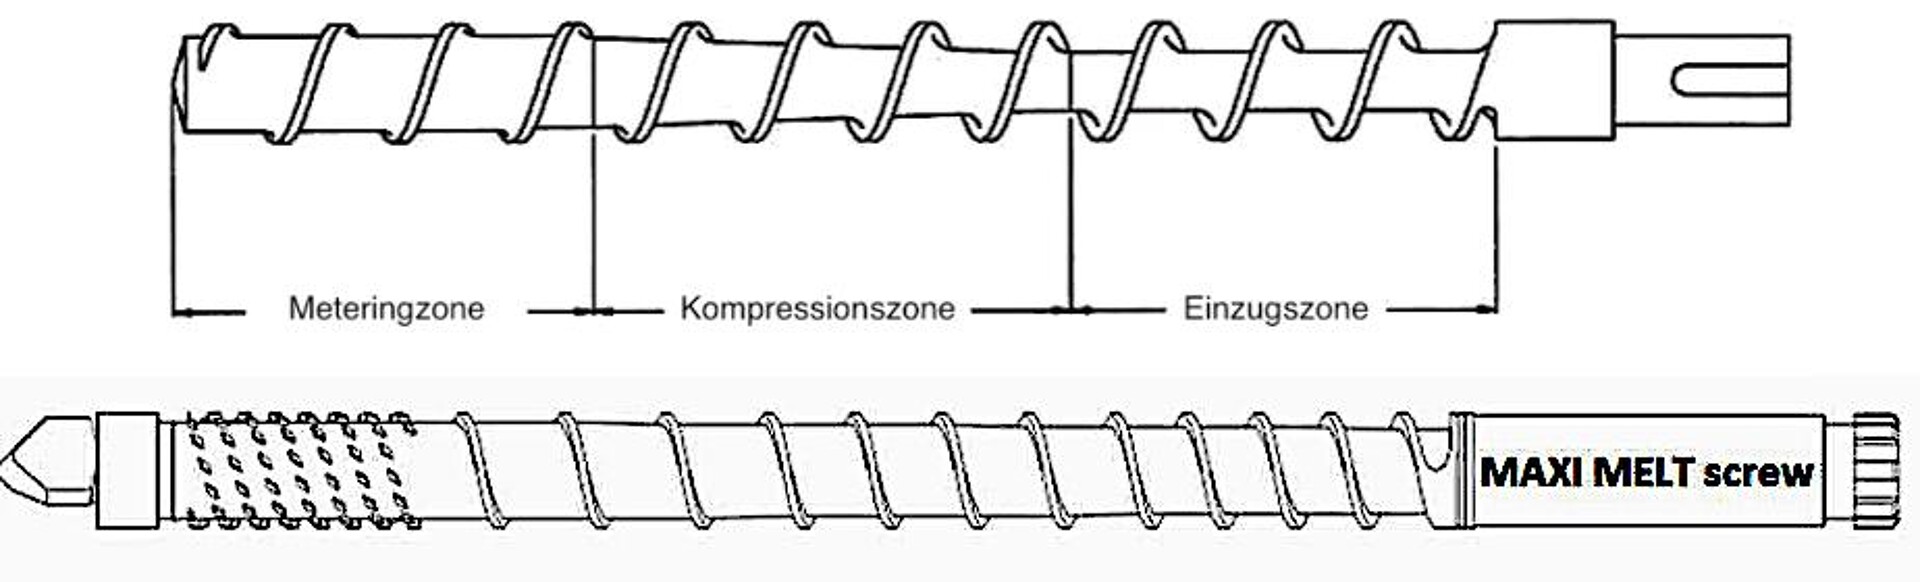 Vergleich des konventionellen 3-Zonen-Schneckenkonzepts (oben) mit der durchgehend konischen und variabel steigenden Maxi-Melt-Schnecke – hier jeweils in Kombination mit einem Mischteil. (Abb.: Maxi Melt)